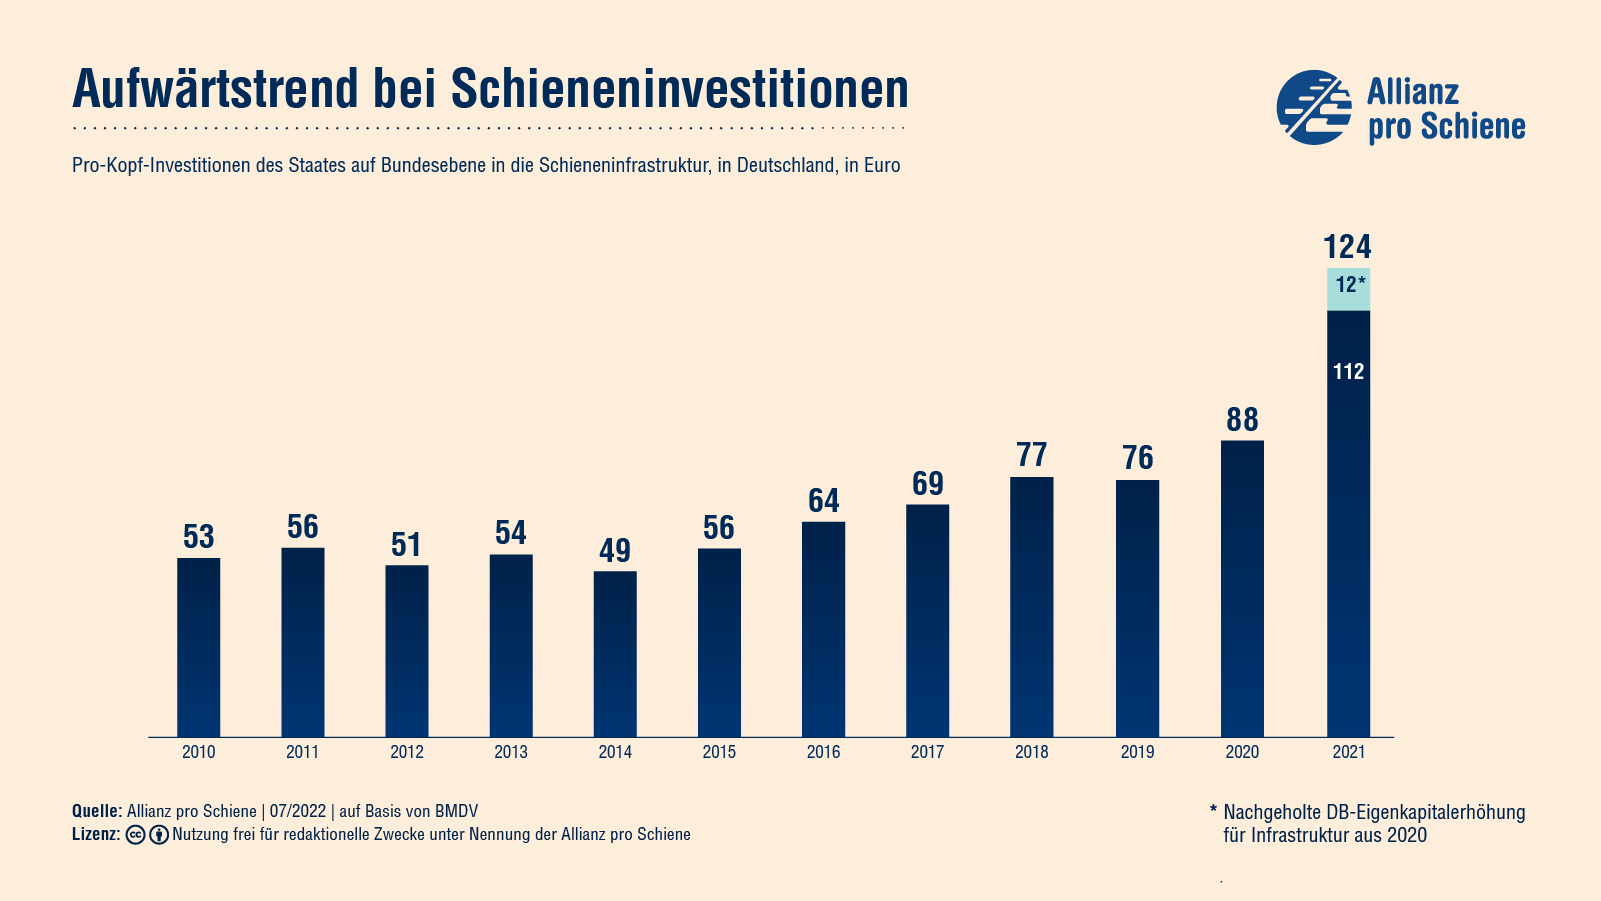 Pro Kopf investiert Deutschland 2020 88 Euro in die Schieneninfrastruktur, somit ist ein Aufwärtstrend in den letzten Jahren zu beobachten.